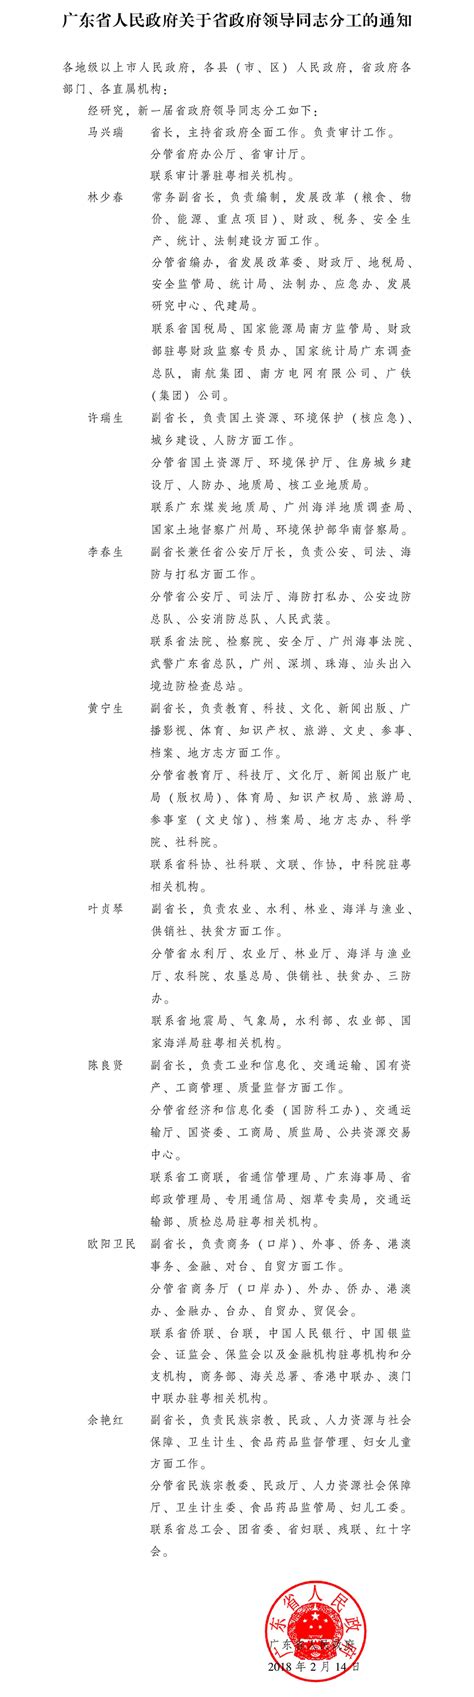 广东省人民政府关于省政府领导同志分工的通知